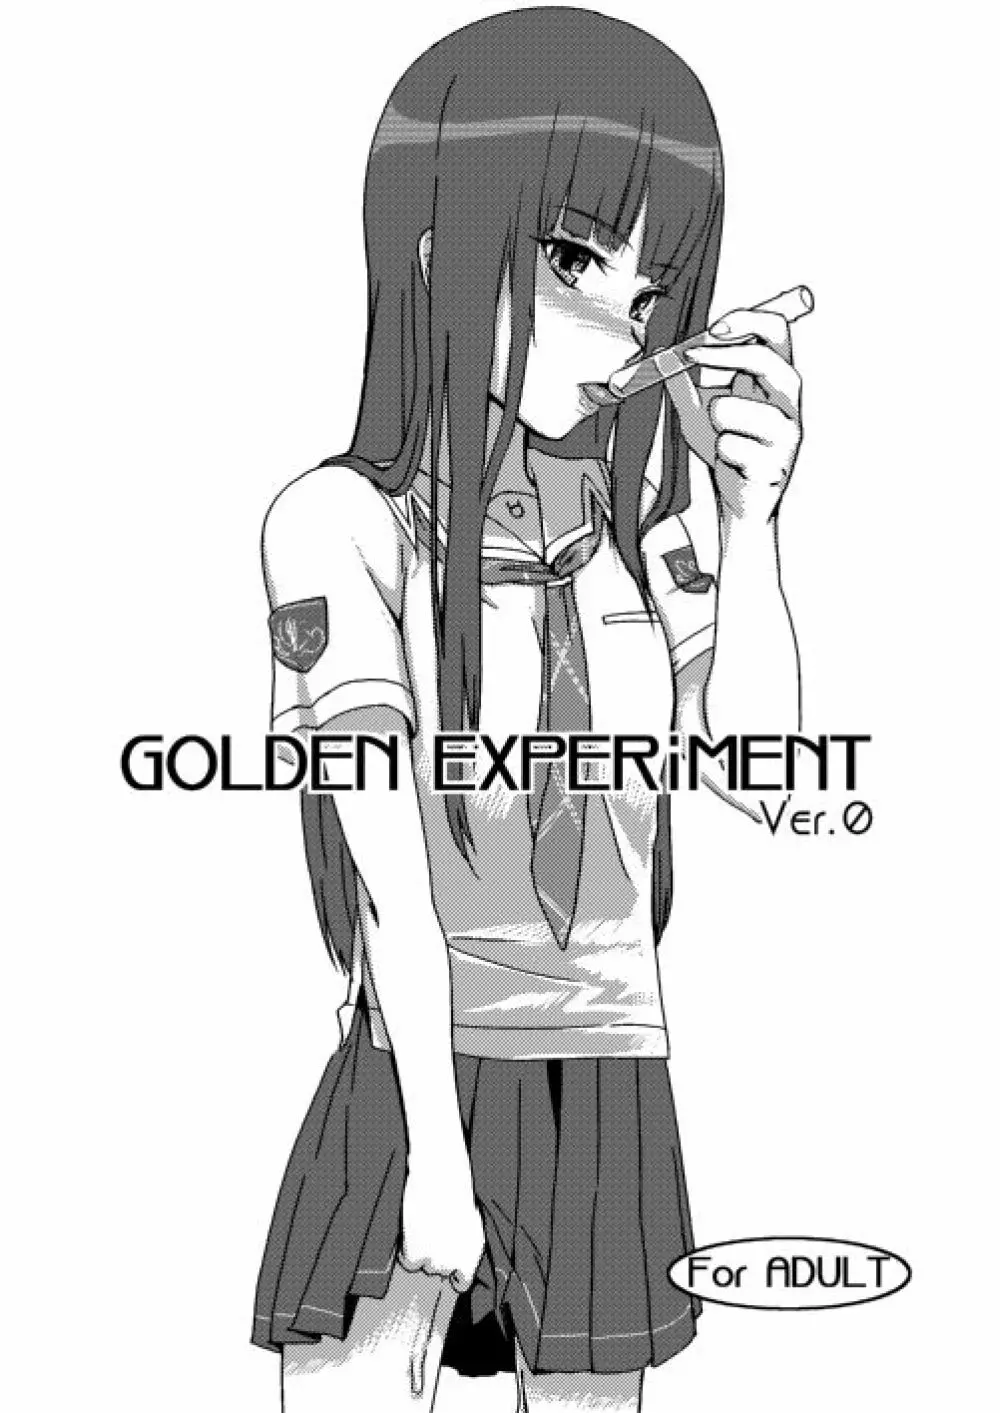 GOLDEN EXPERiMENT Ver.0